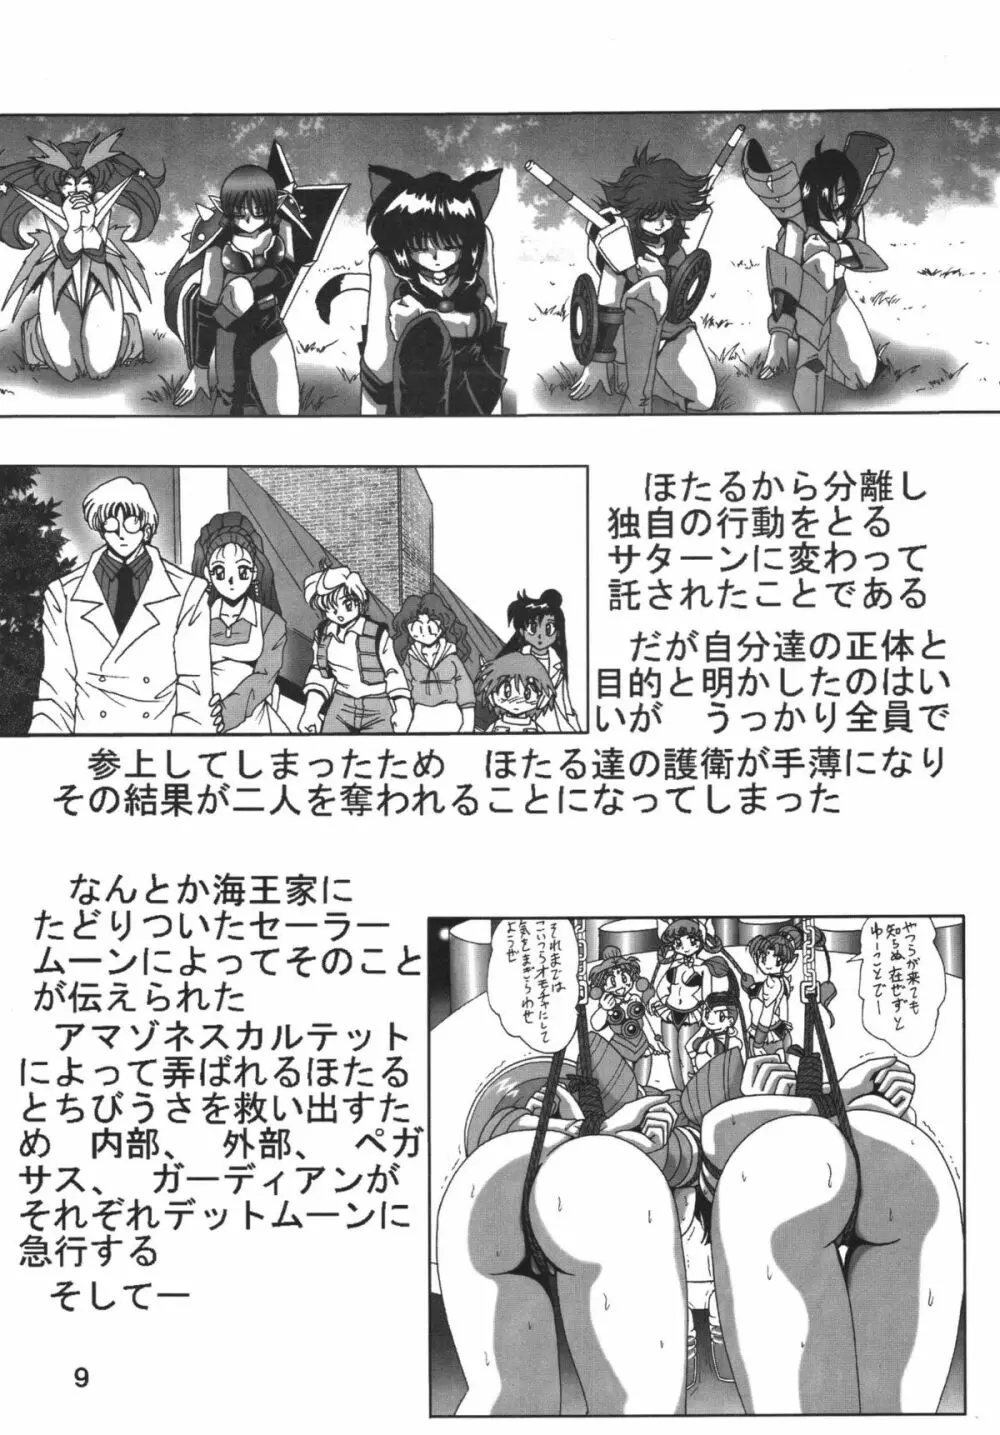 サイレント・サターン SS Vol.8 9ページ